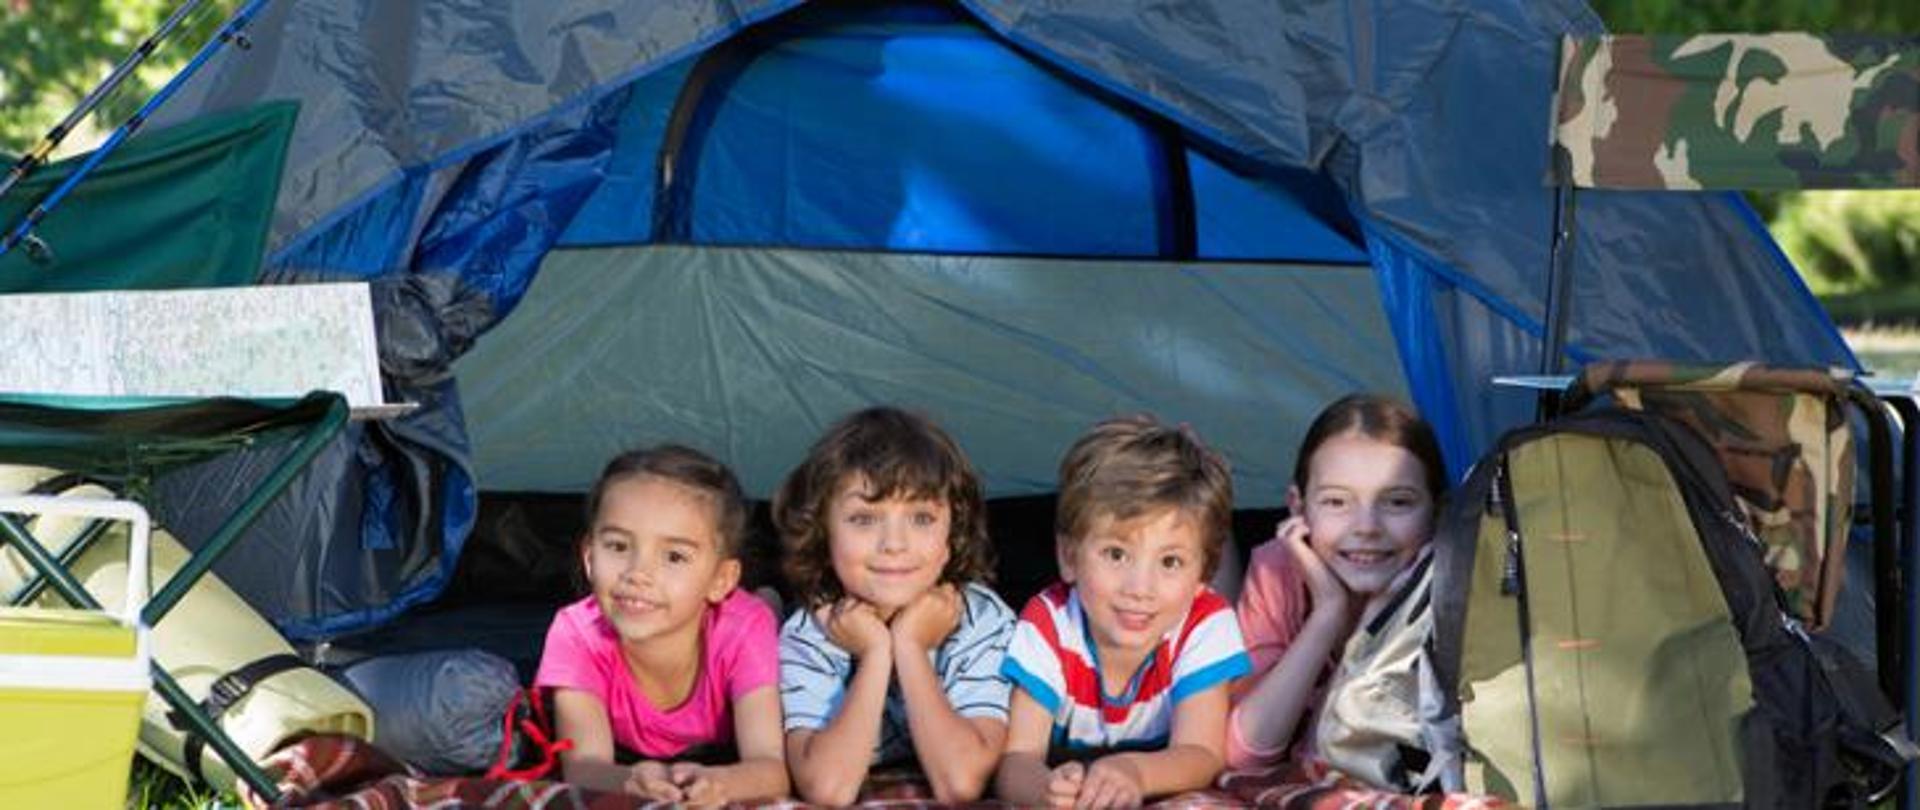 Zdjęcie przedstawia czwórkę dzieci w namiocie